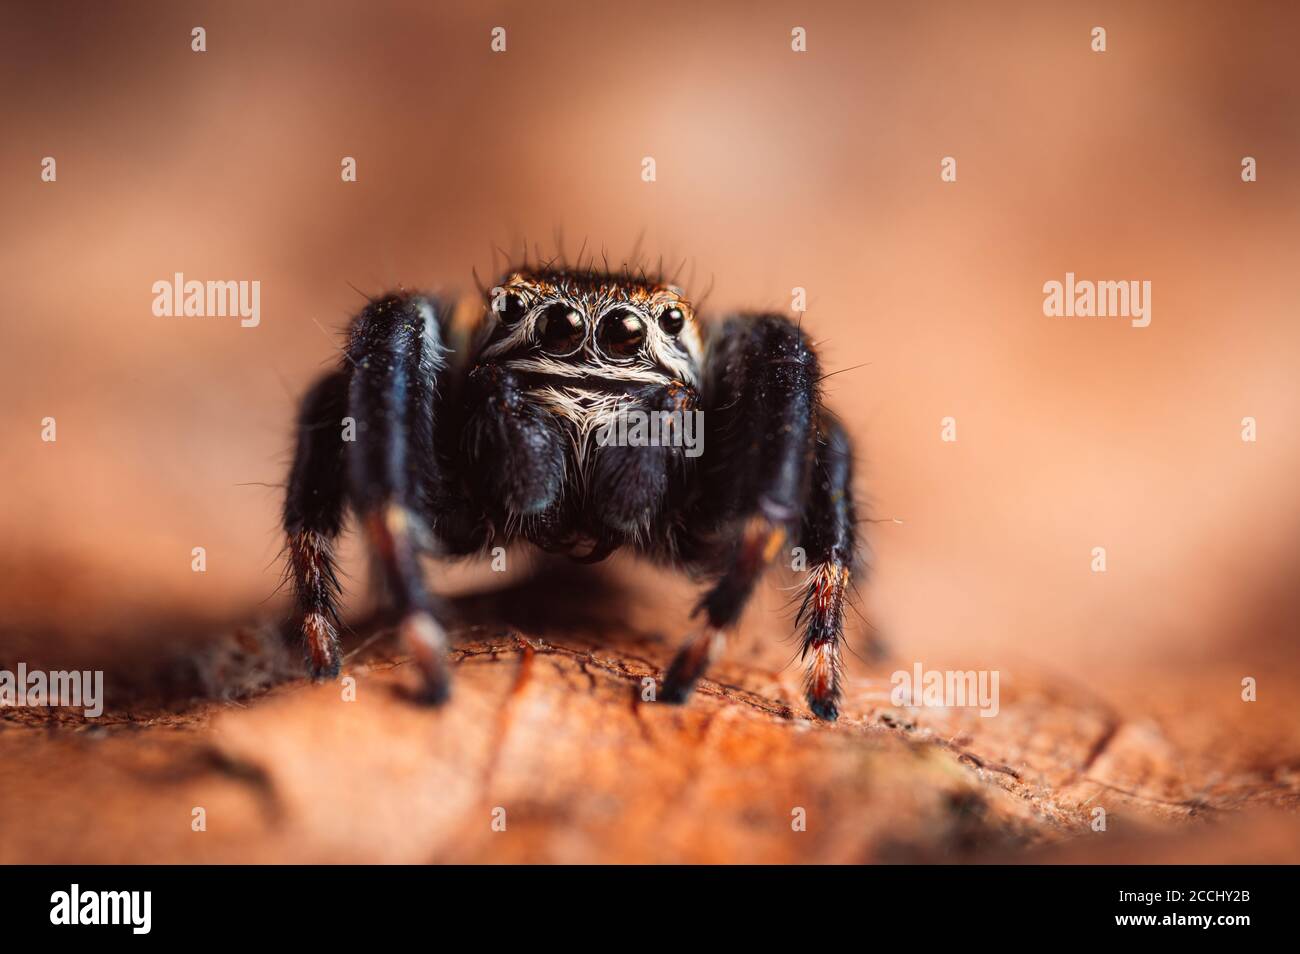 Schwarze Spinne (Evarcha arcuata, springende Spinne) kriecht auf einem trockenen Blatt. Nahaufnahme einer Spinne, Makro, dunkelbrauner Hintergrund. Stockfoto